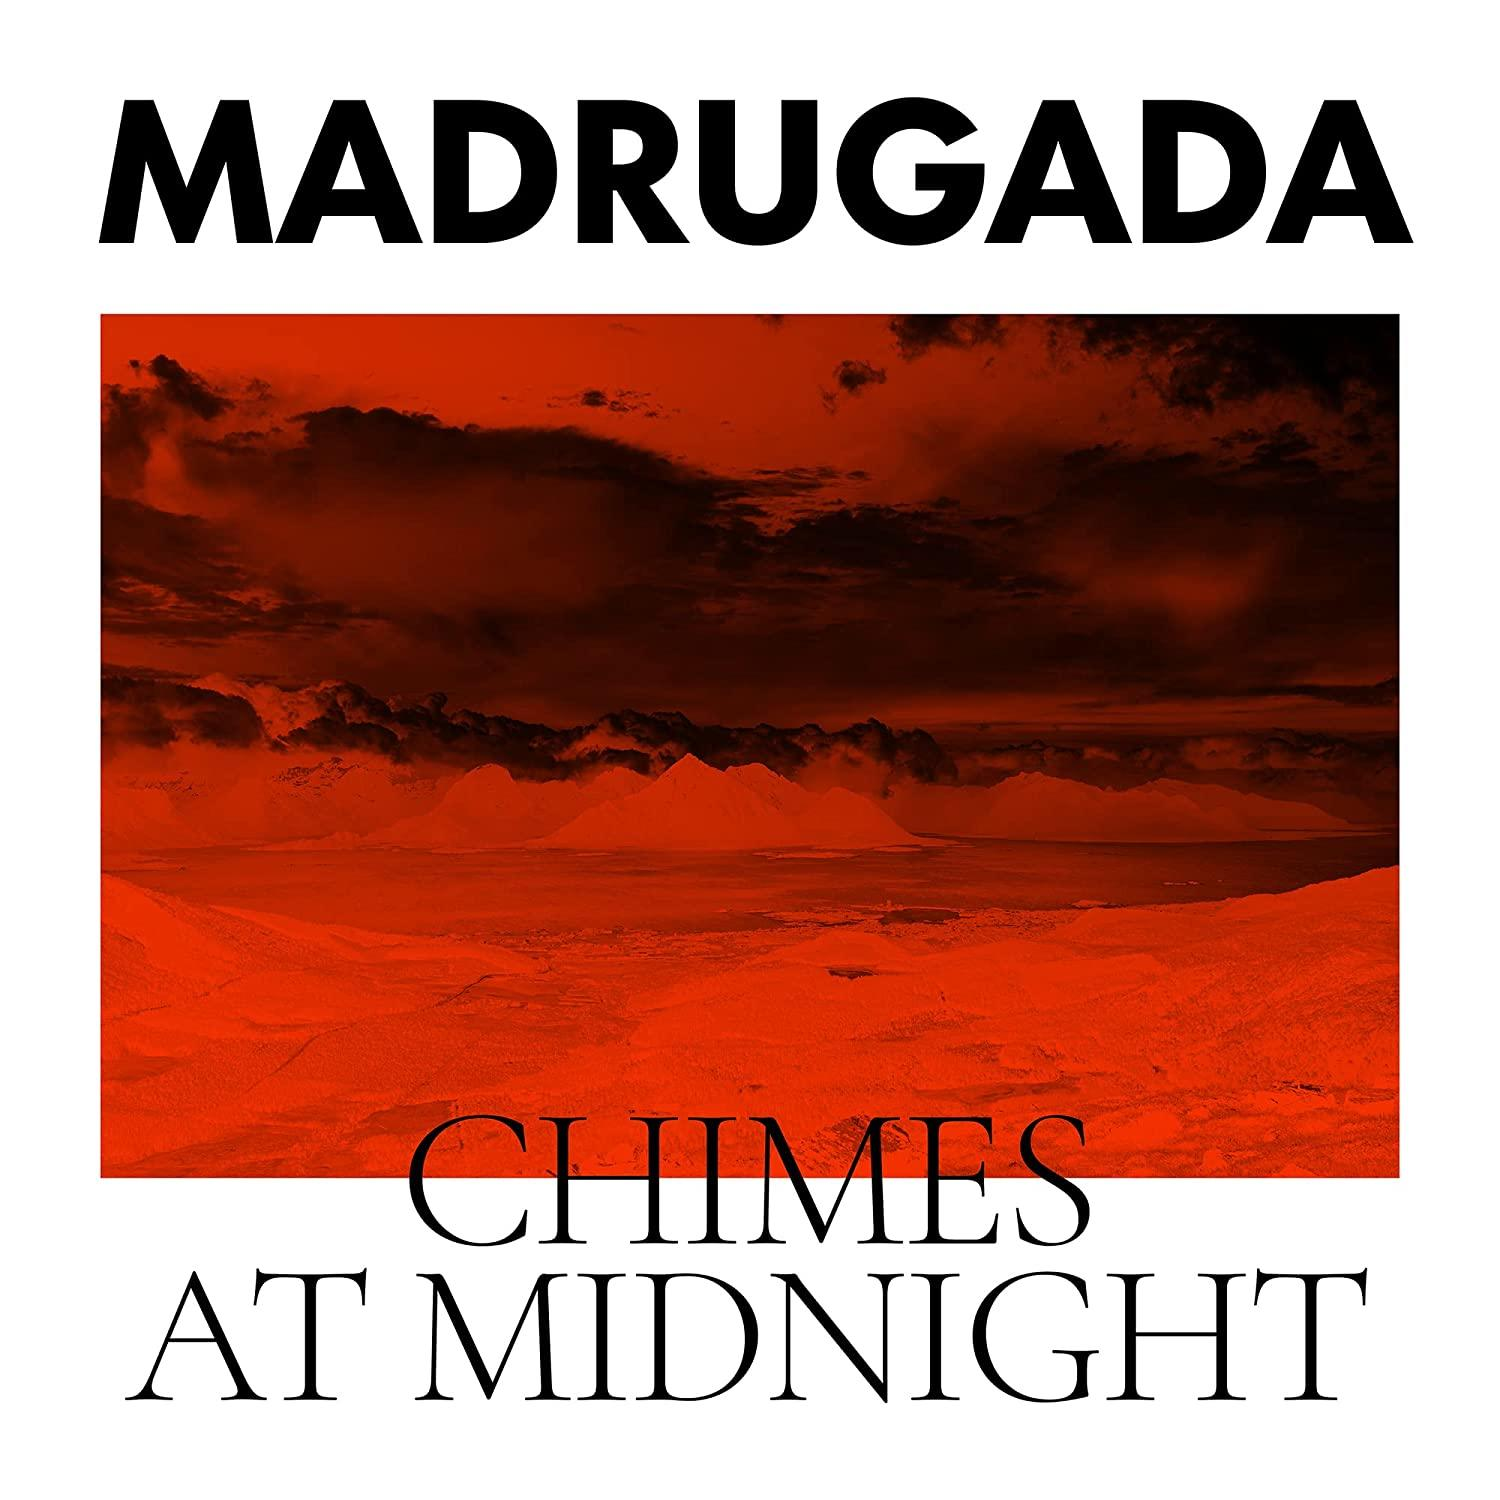 - Chimes Midnight - Madrugada (Vinyl) At